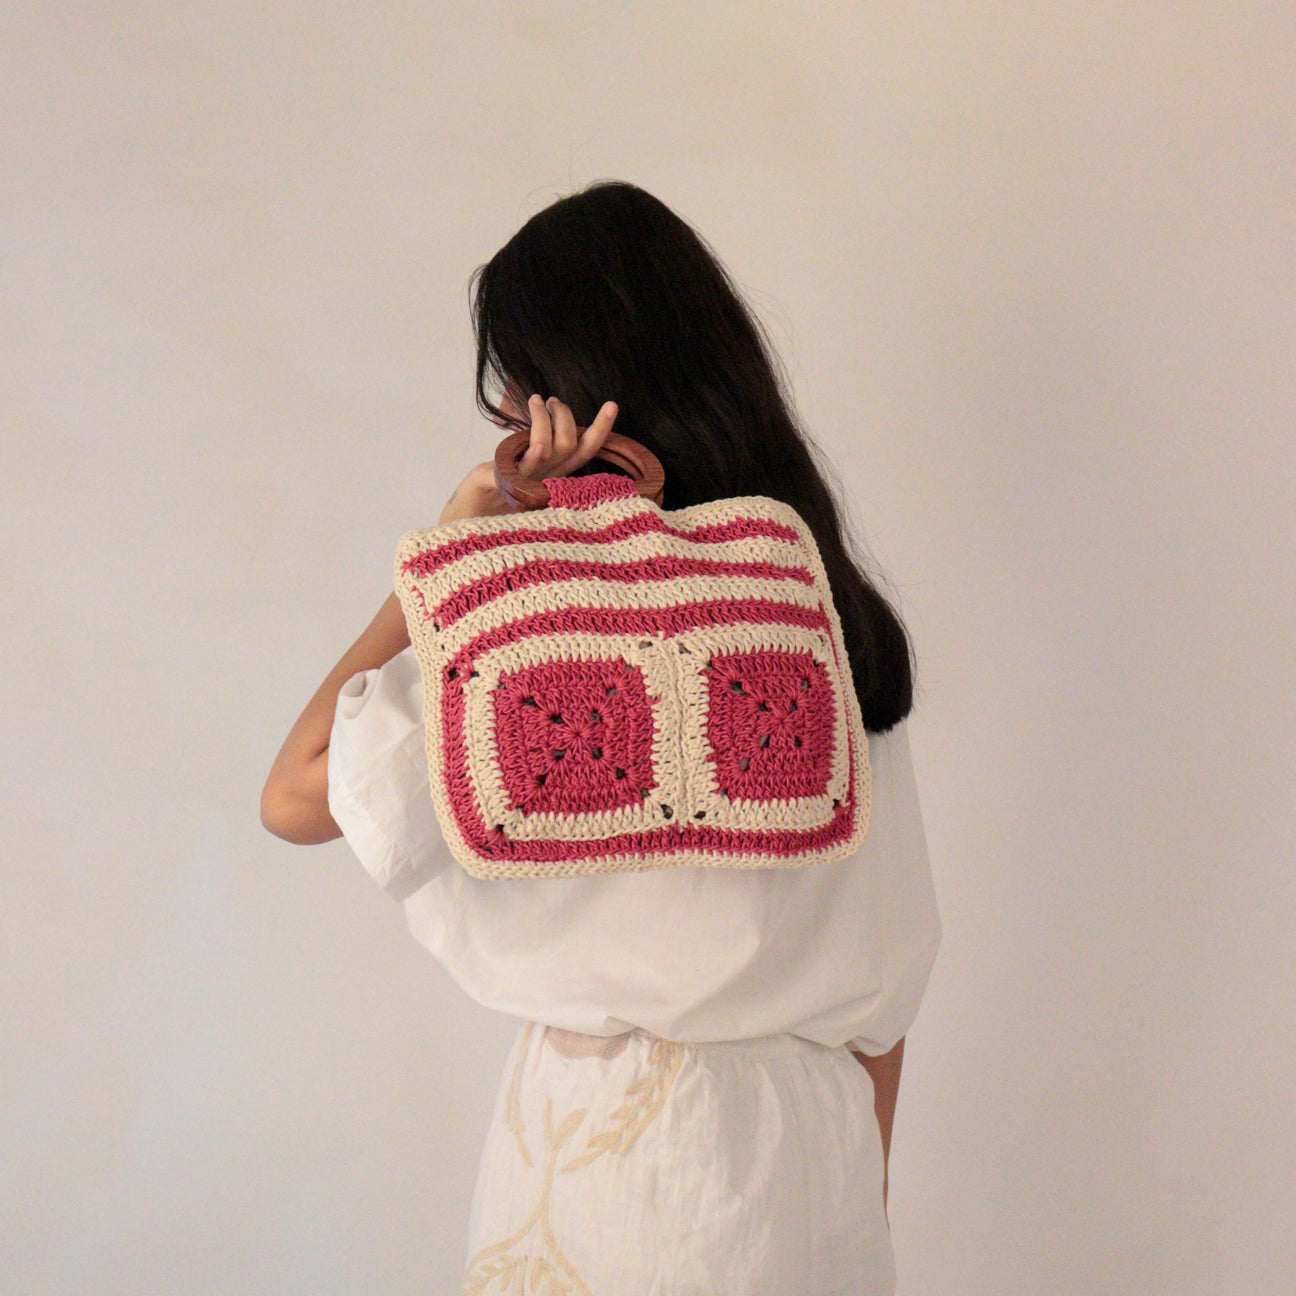 Rectangular crochet hand bag